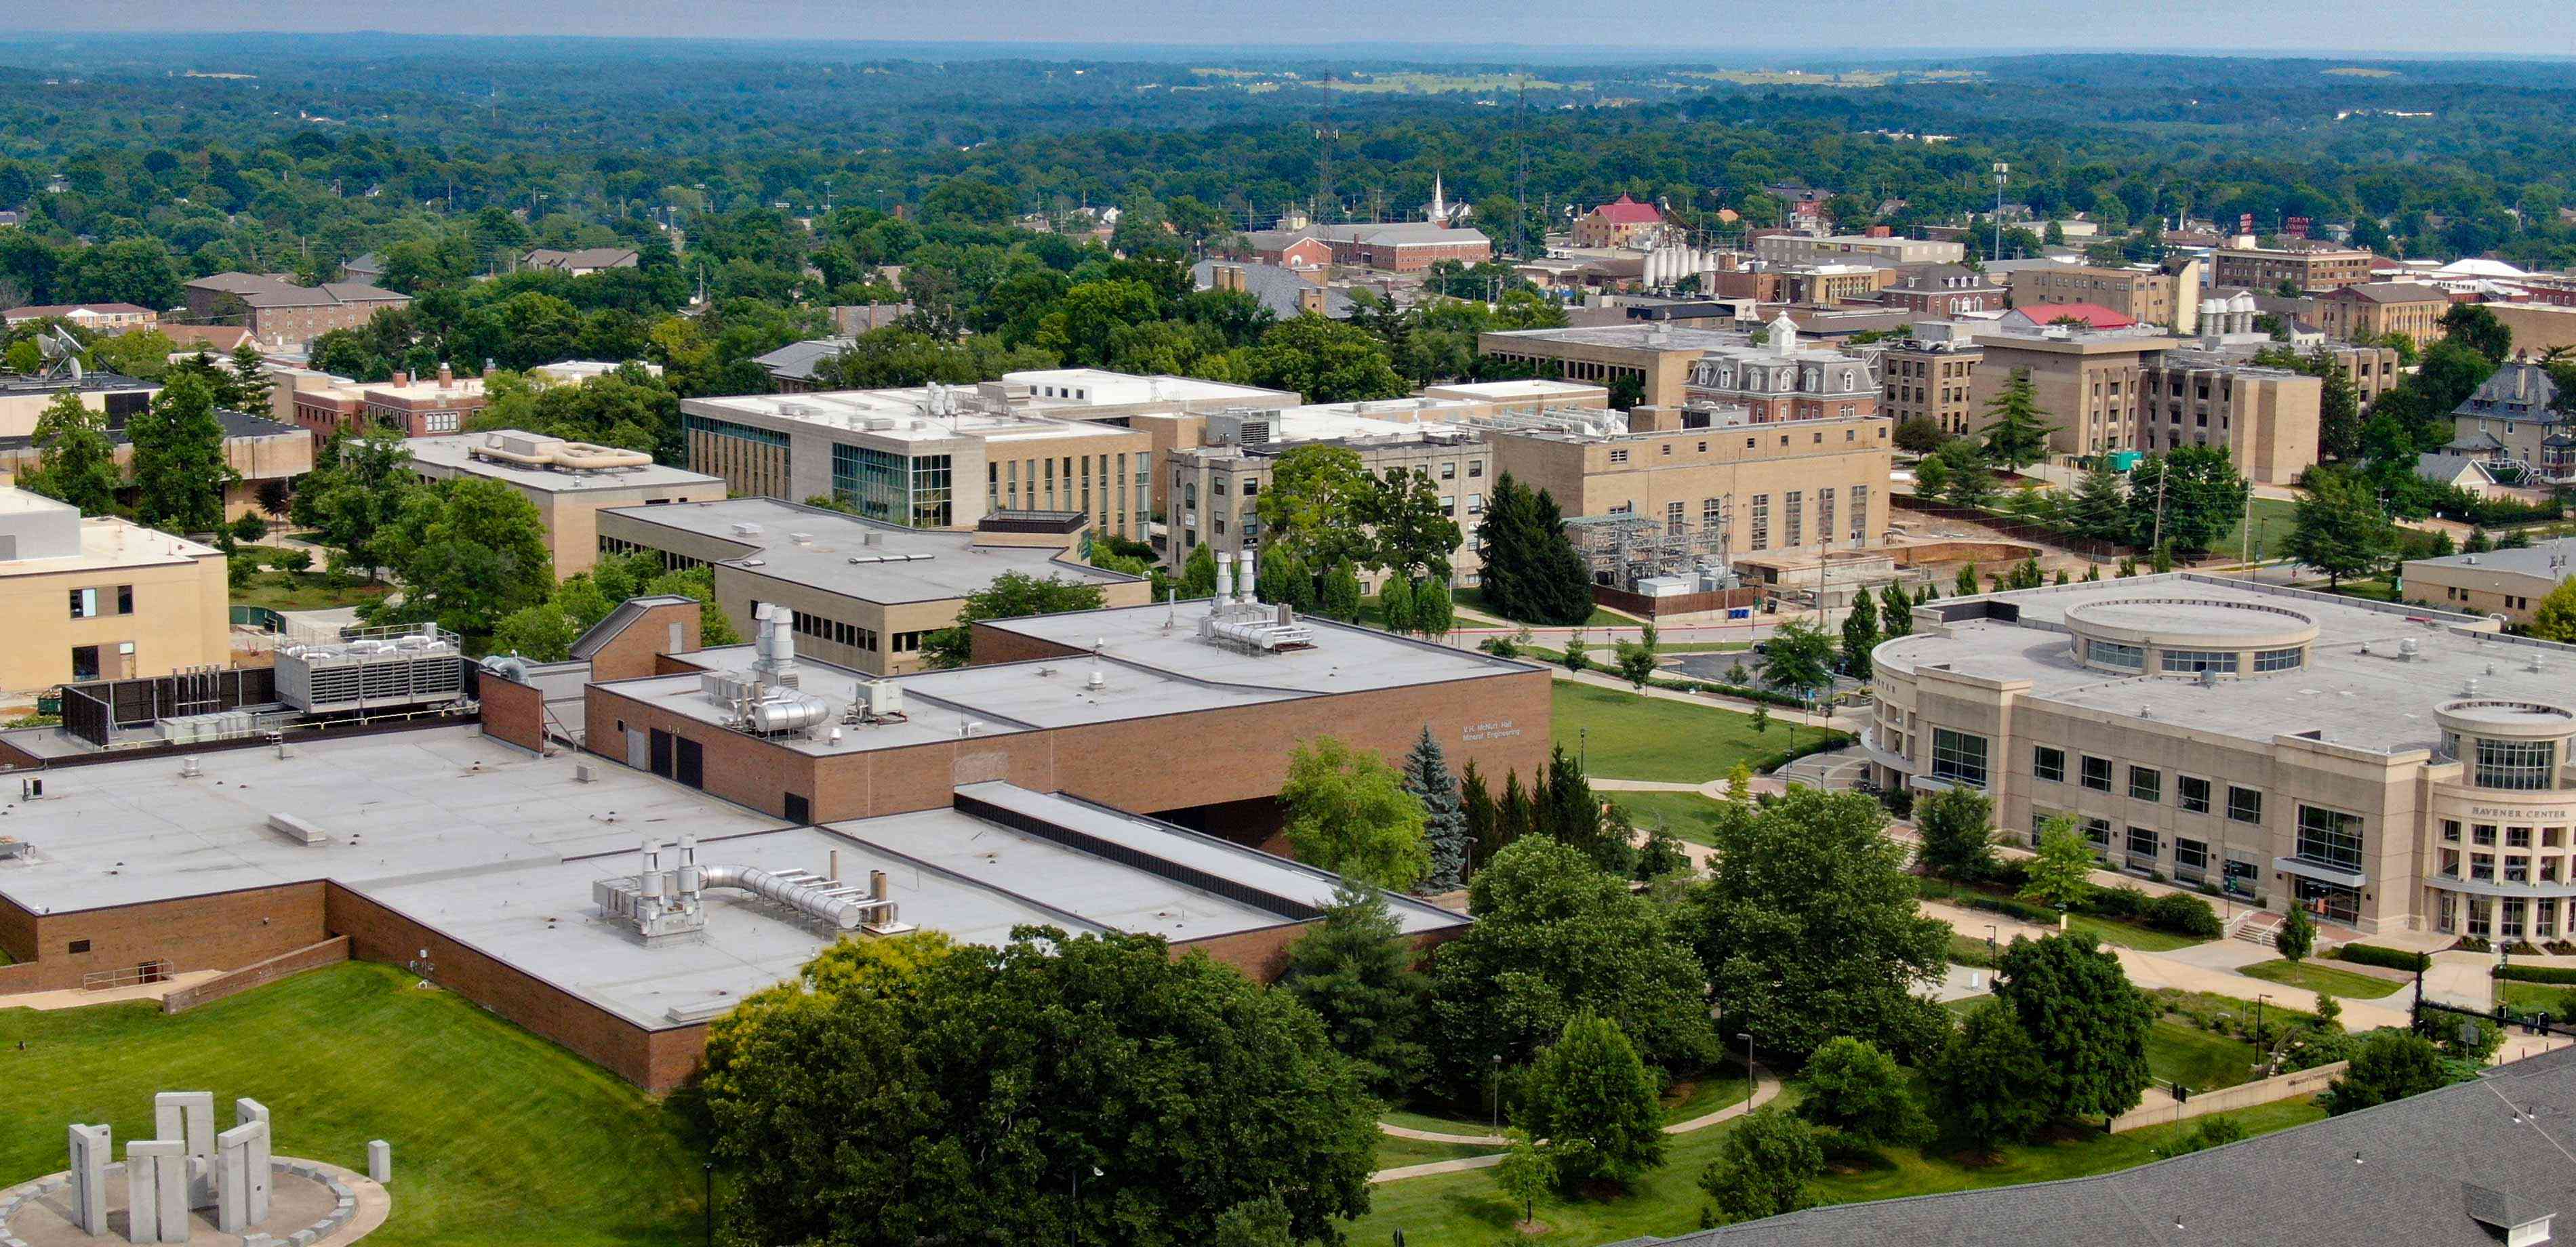 Aerial view of Missouri S&T campus